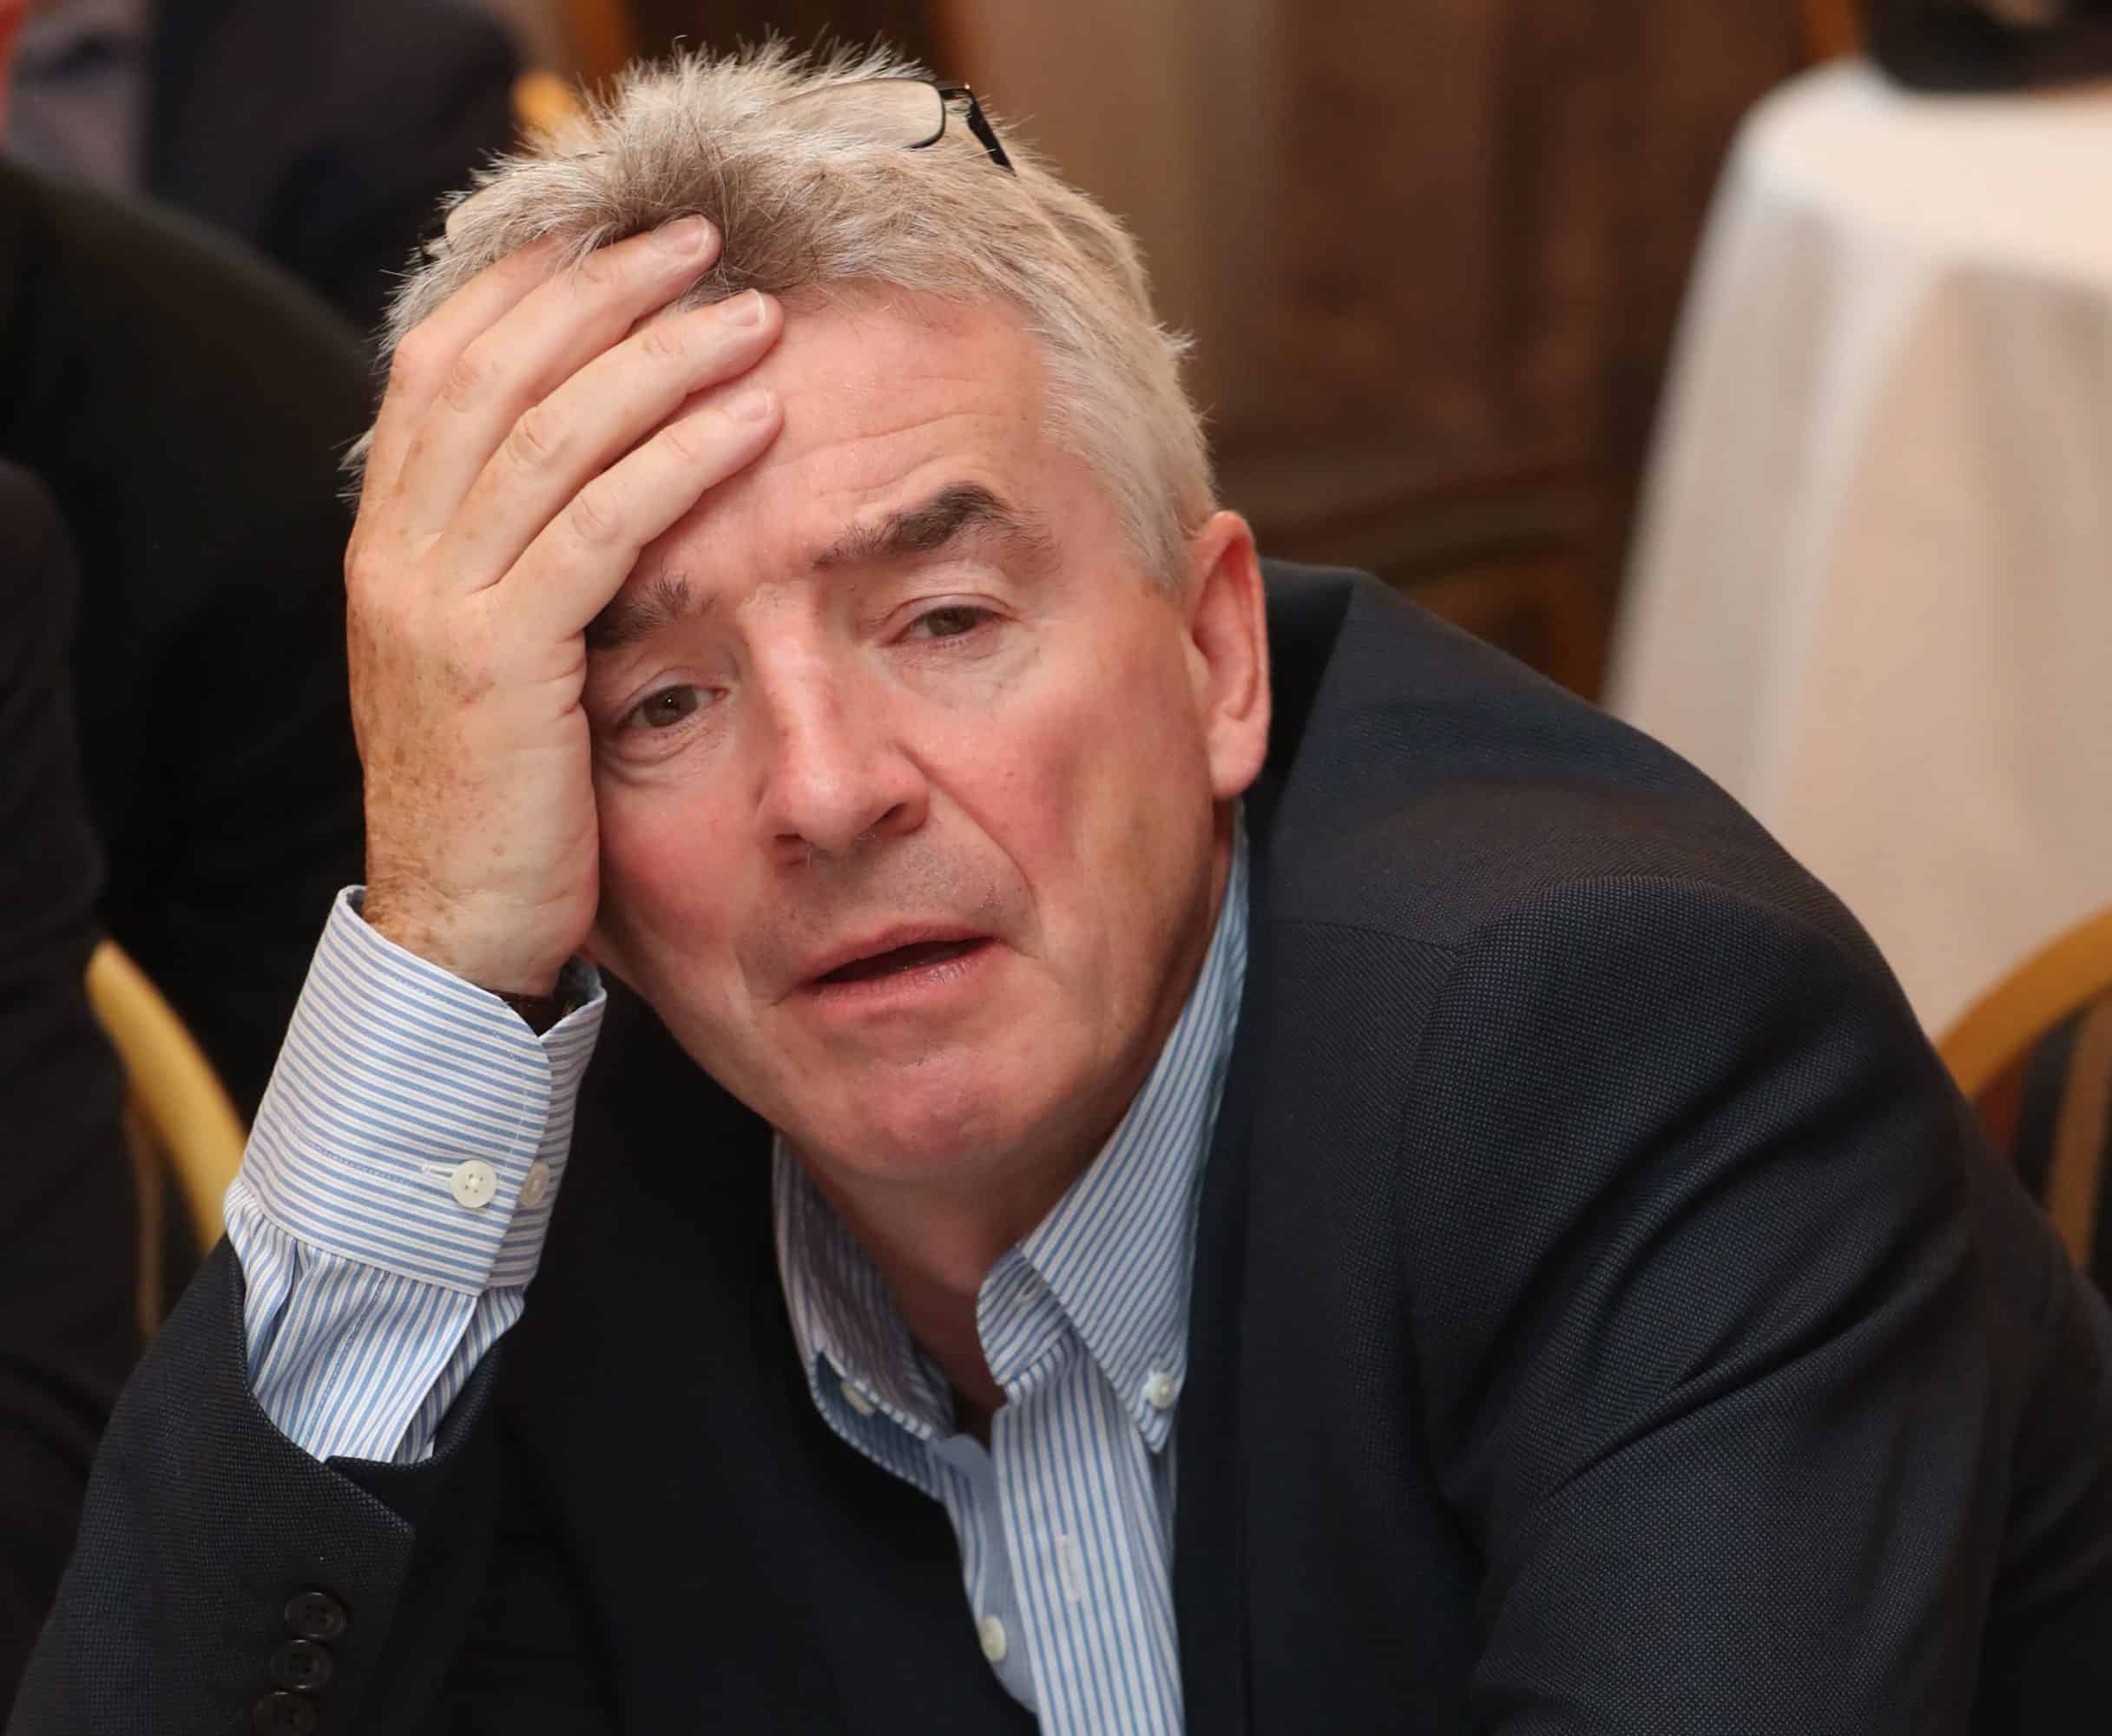 Ryanair boss Michael O’Leary slammed for ‘abhorrent’ remarks on Muslims